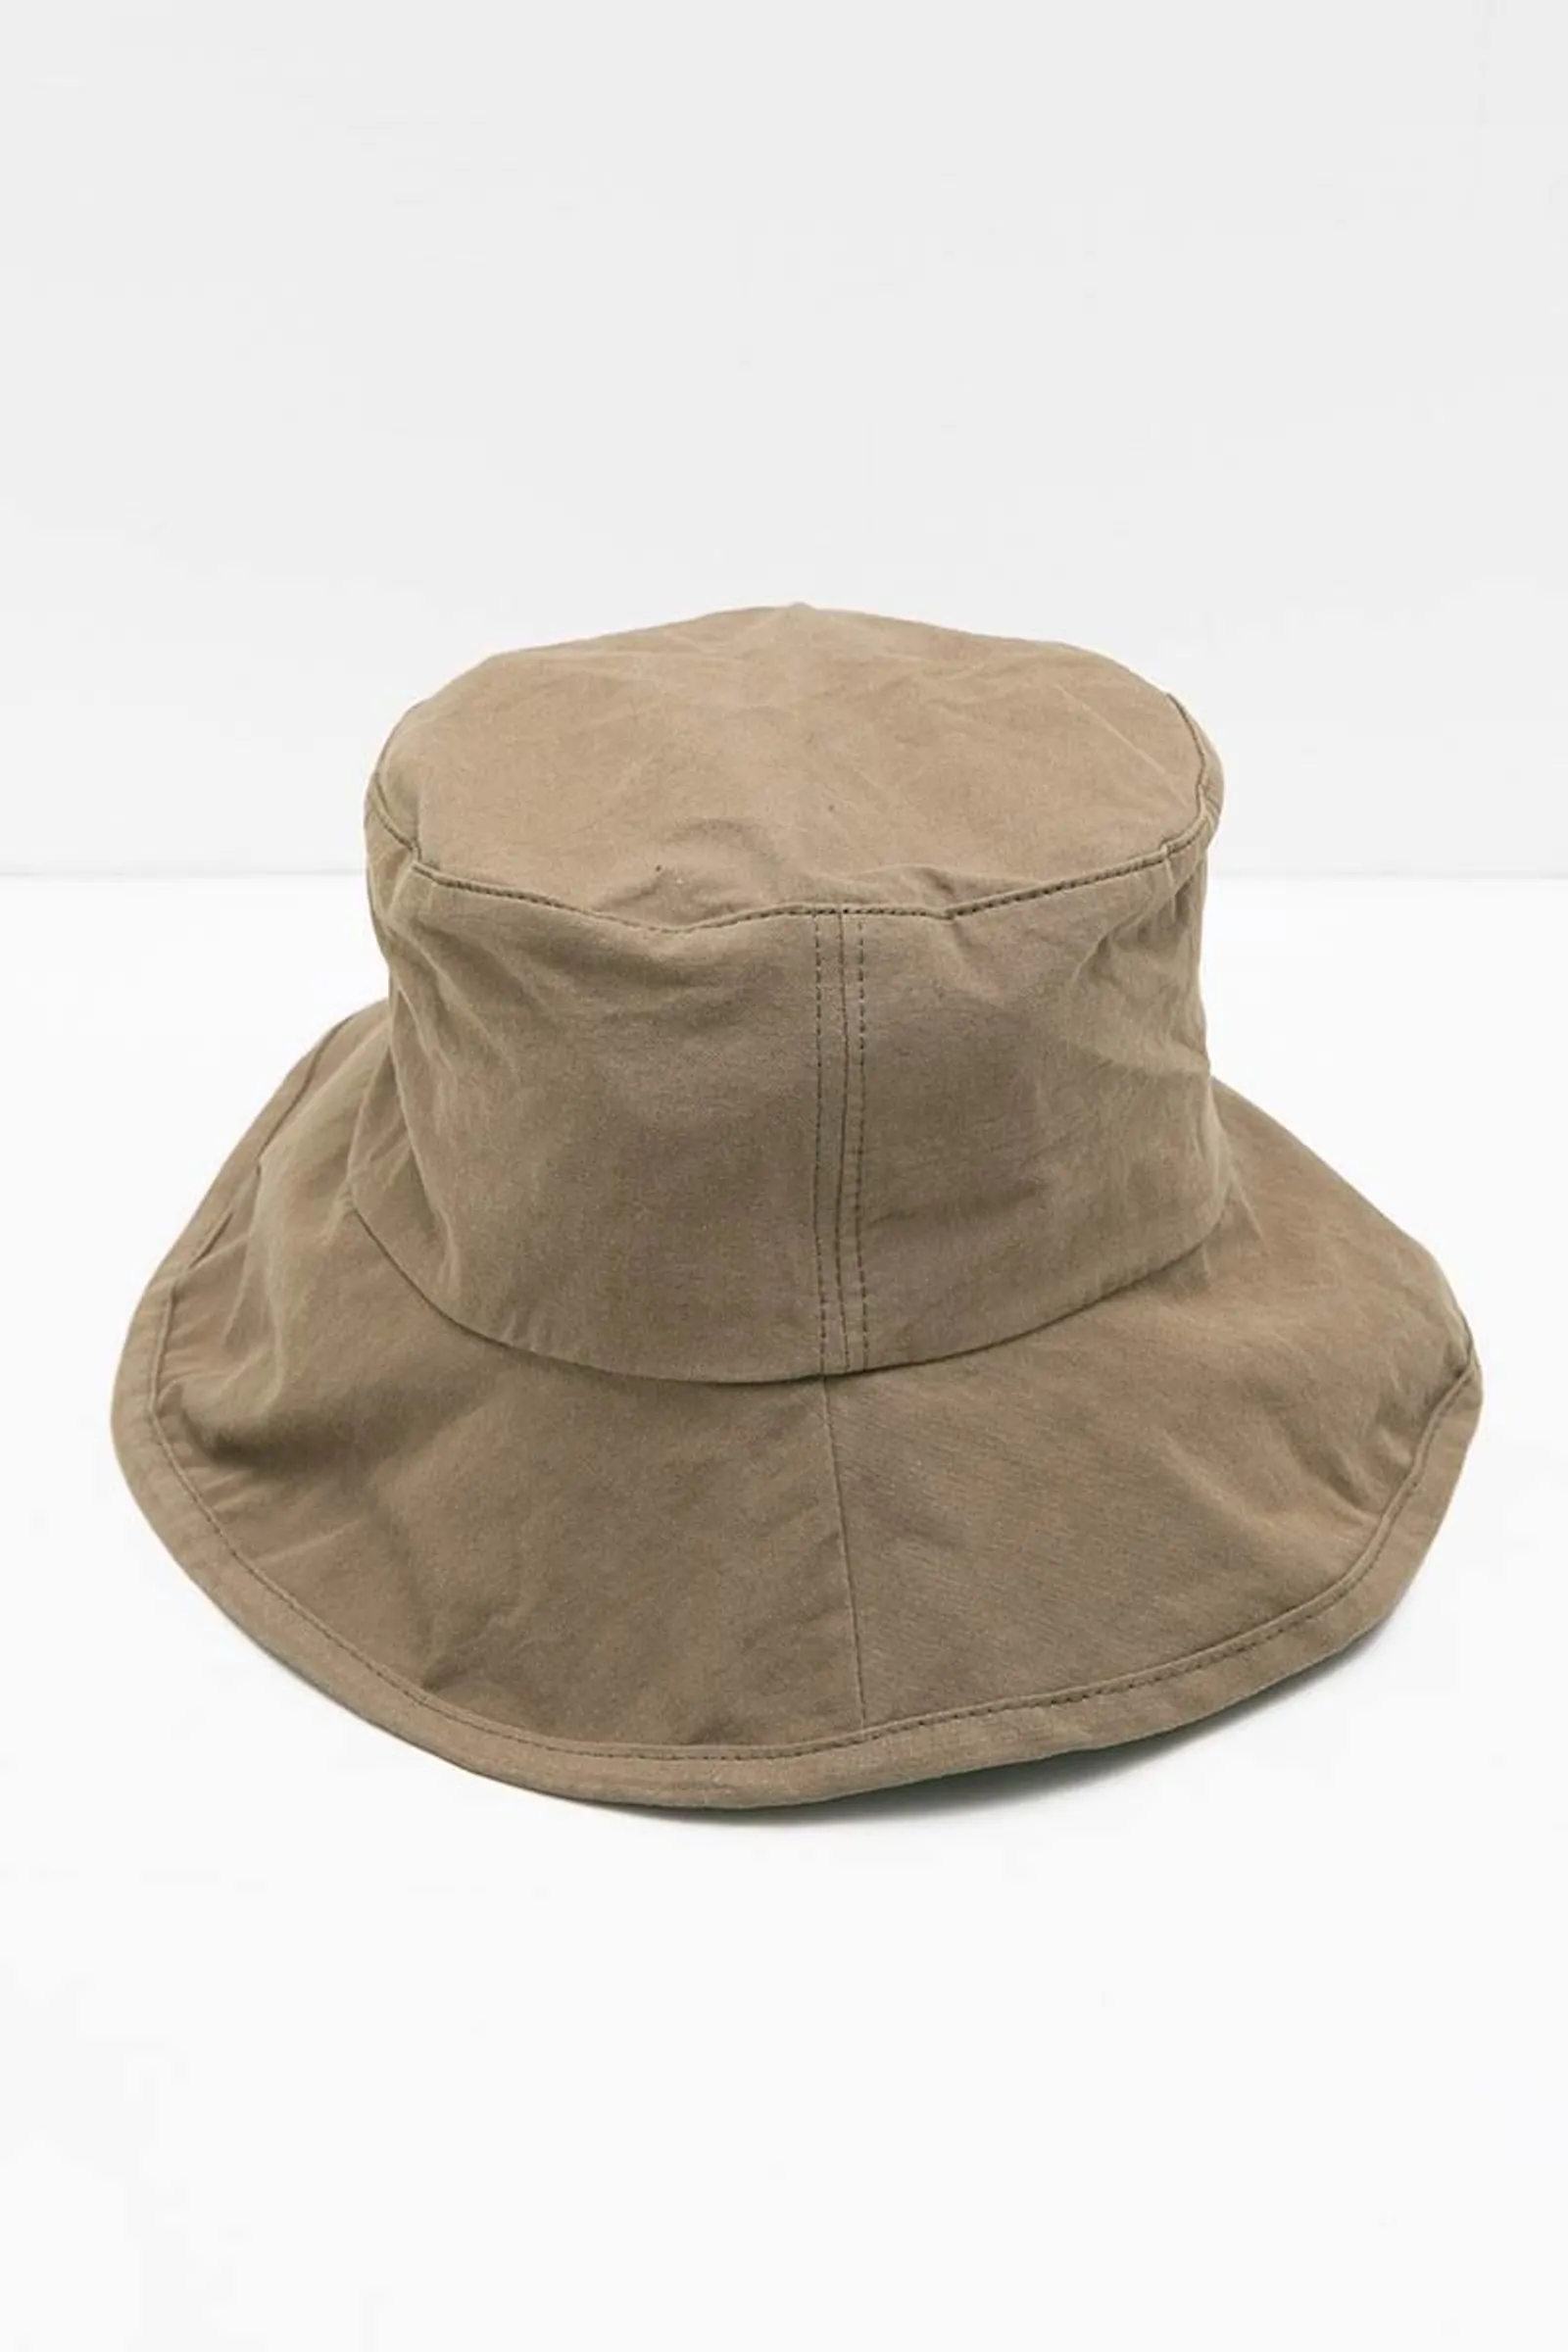 #PopbelaOOTTD: Topi yang Bisa Kamu Andalkan saat Musim Hujan